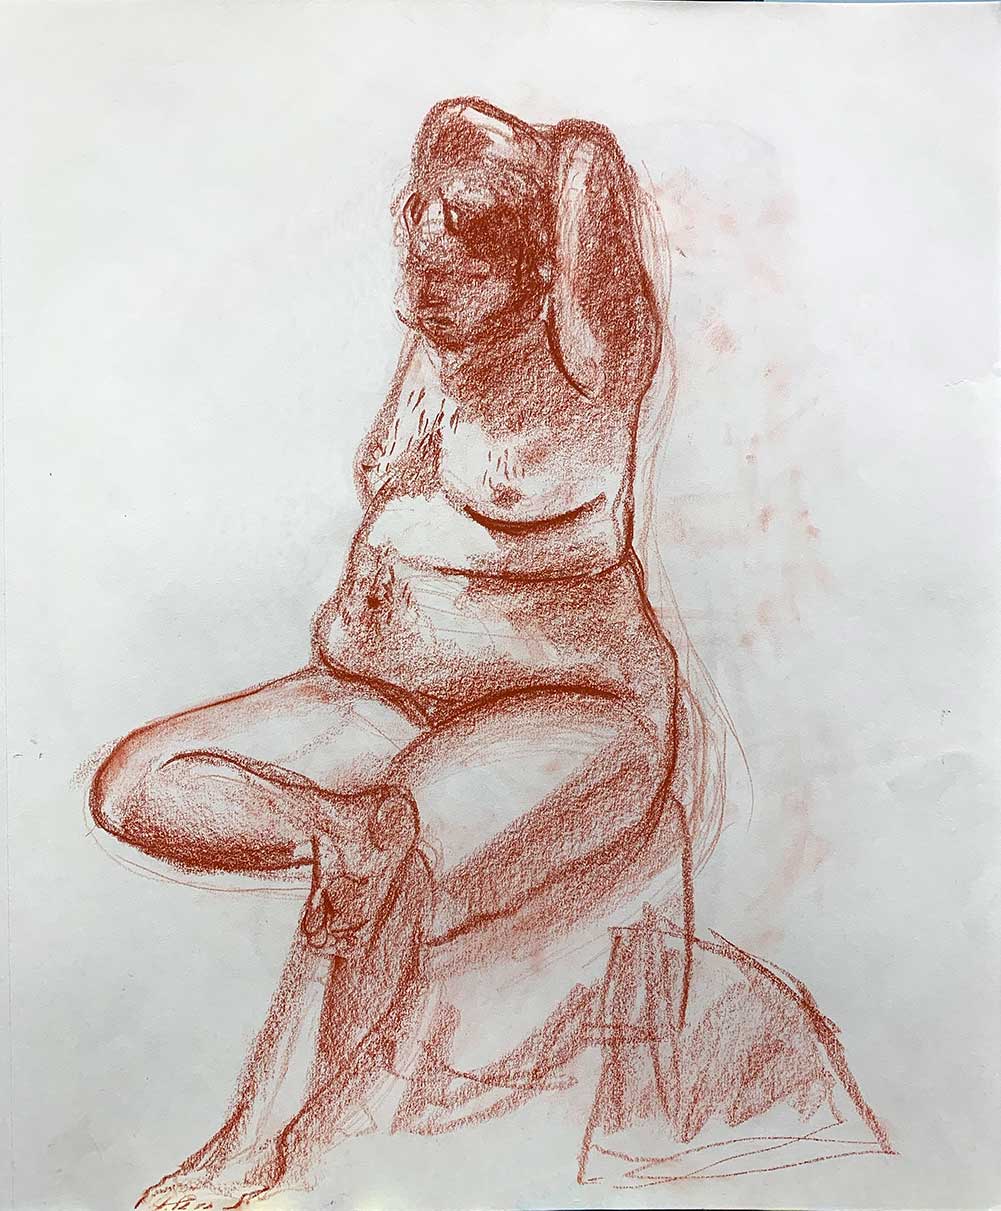 Reaching Figure, Conté crayon pencil on paper, 17”x14”, 2018